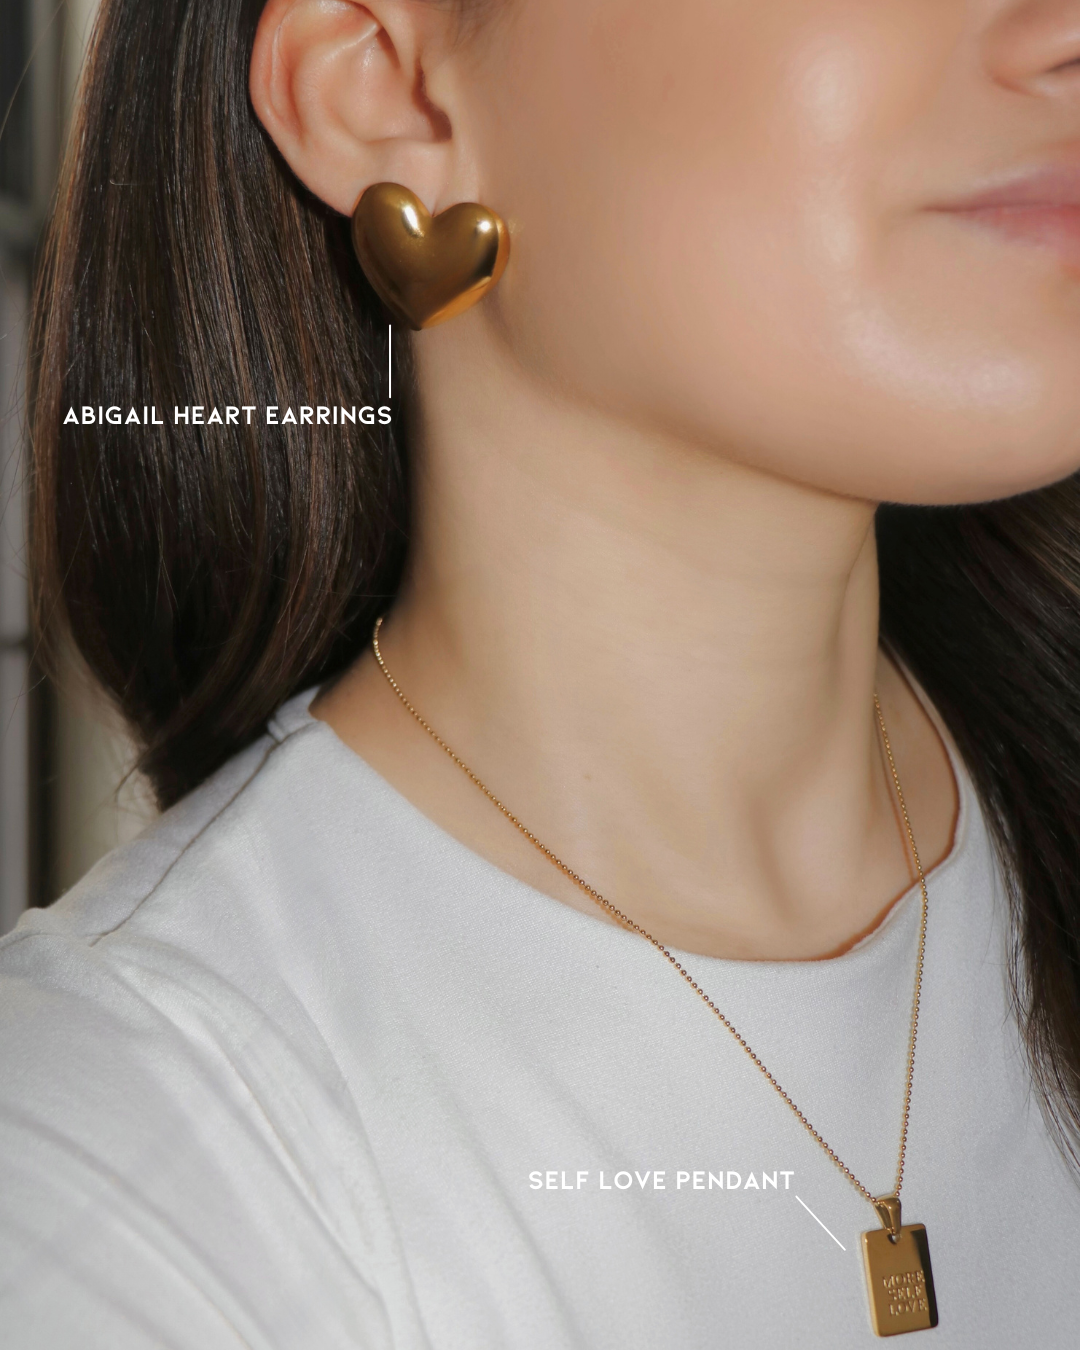 The Abigail Heart Earrings